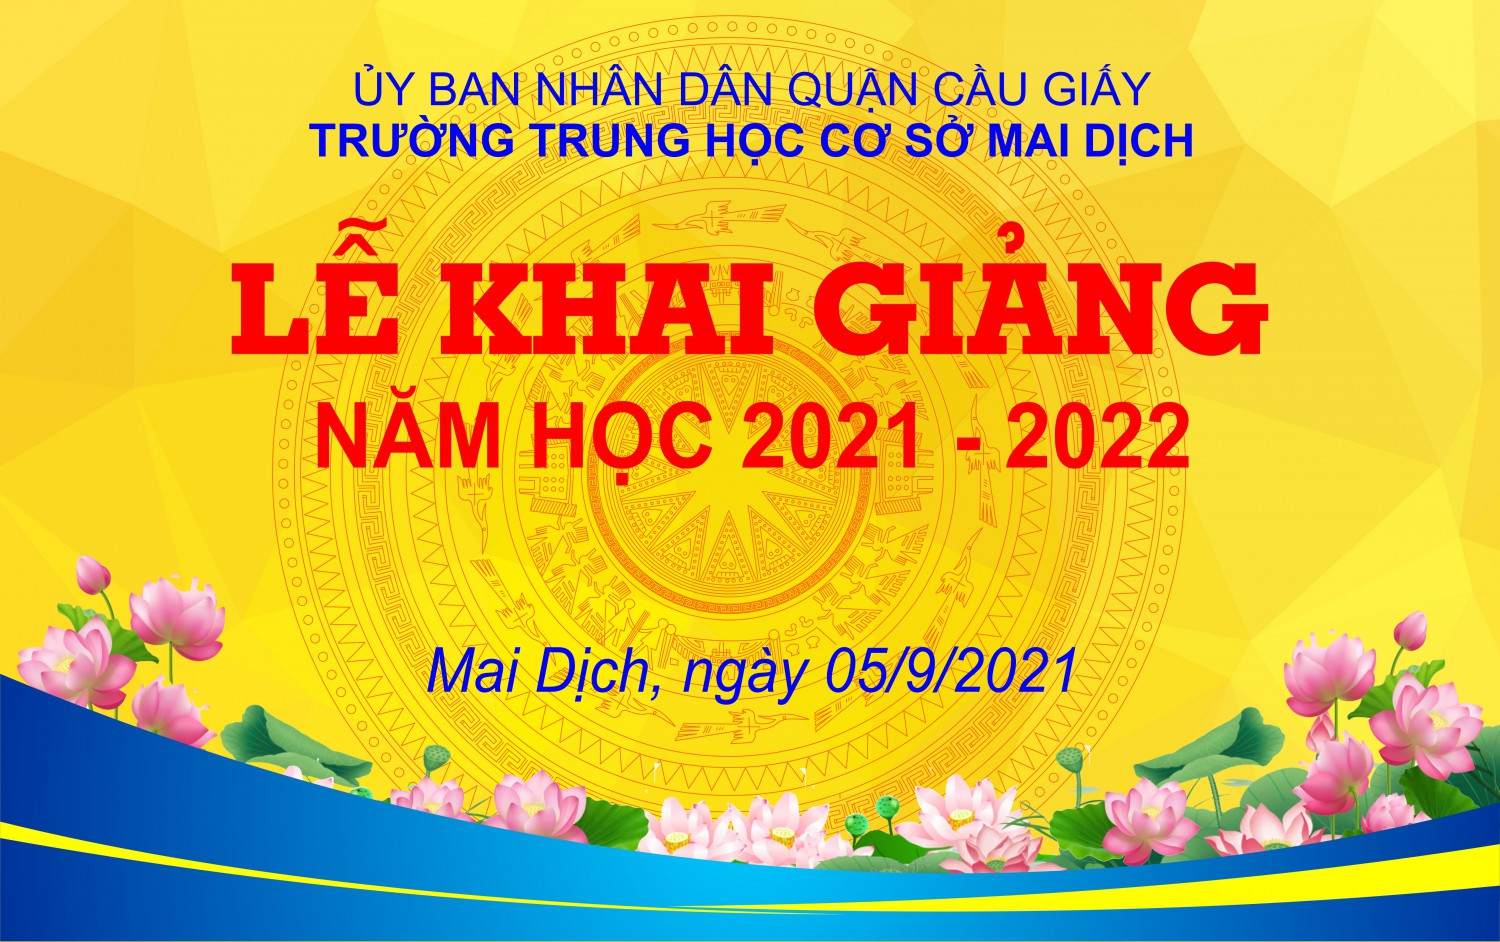 LỄ KHAI GIẢNG NĂM HỌC 2021 - 2022